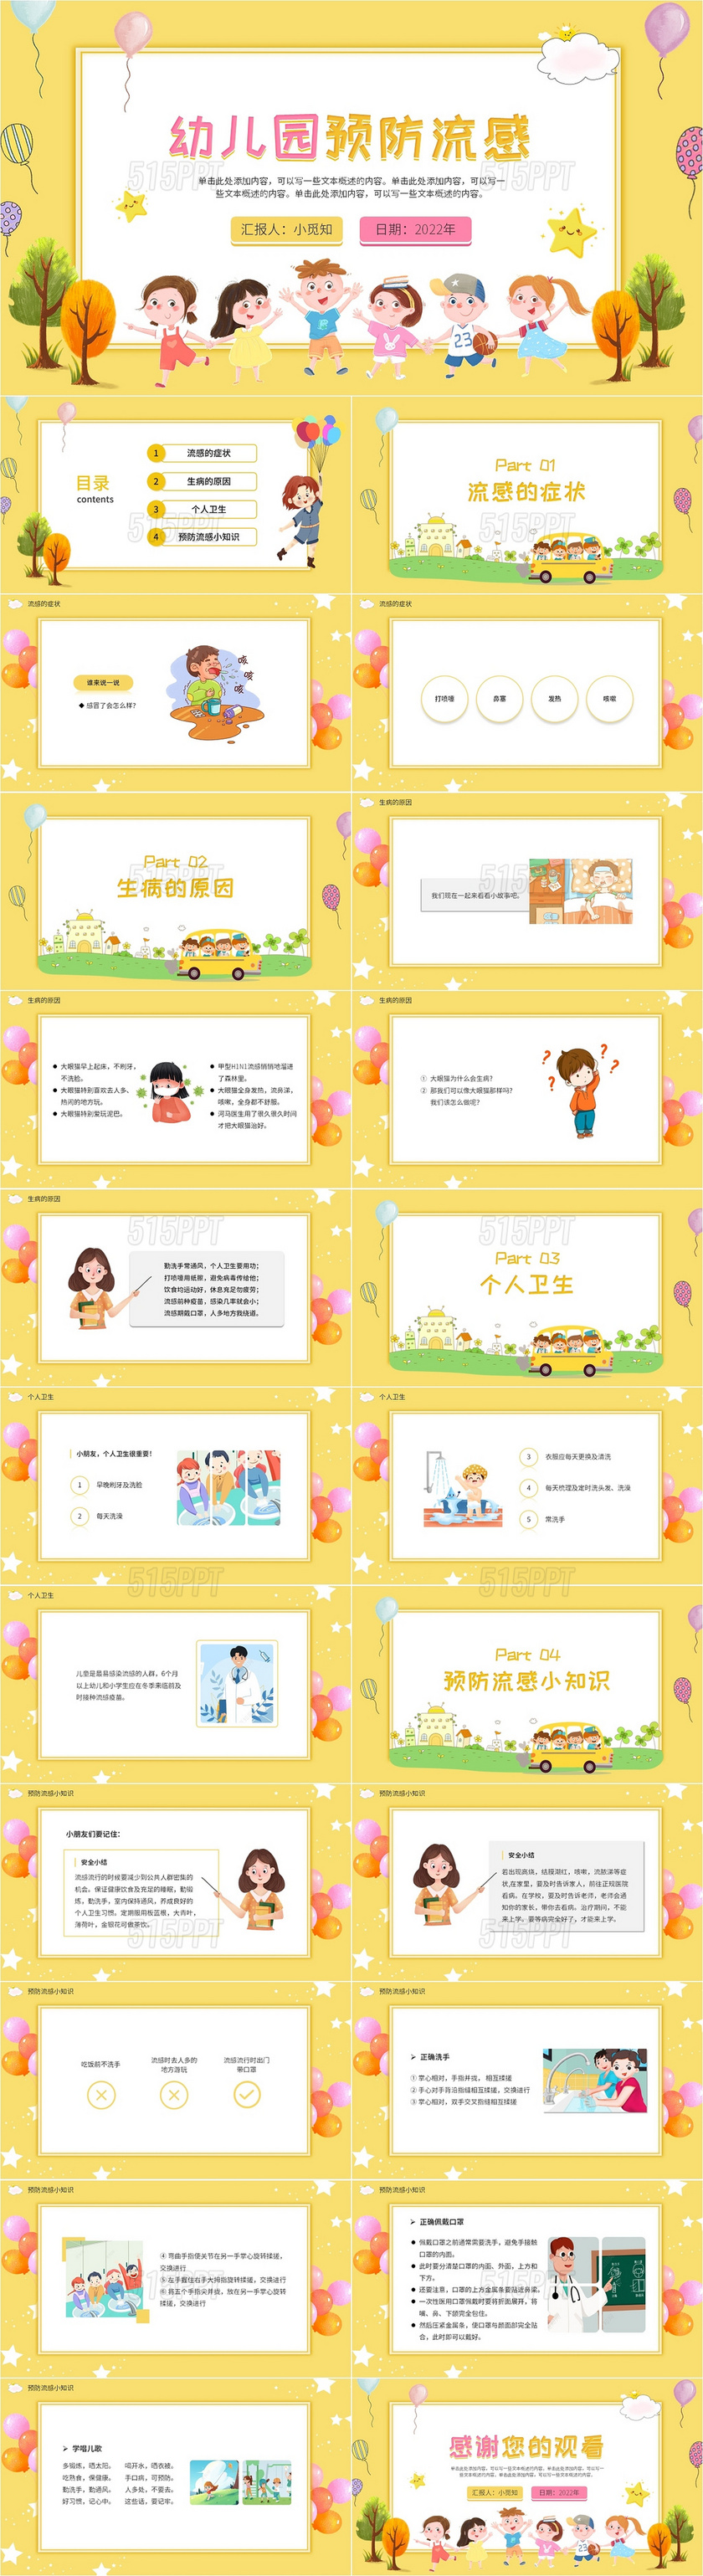 黄色可爱卡通风格简约大气幼儿园预防流感PPT模板